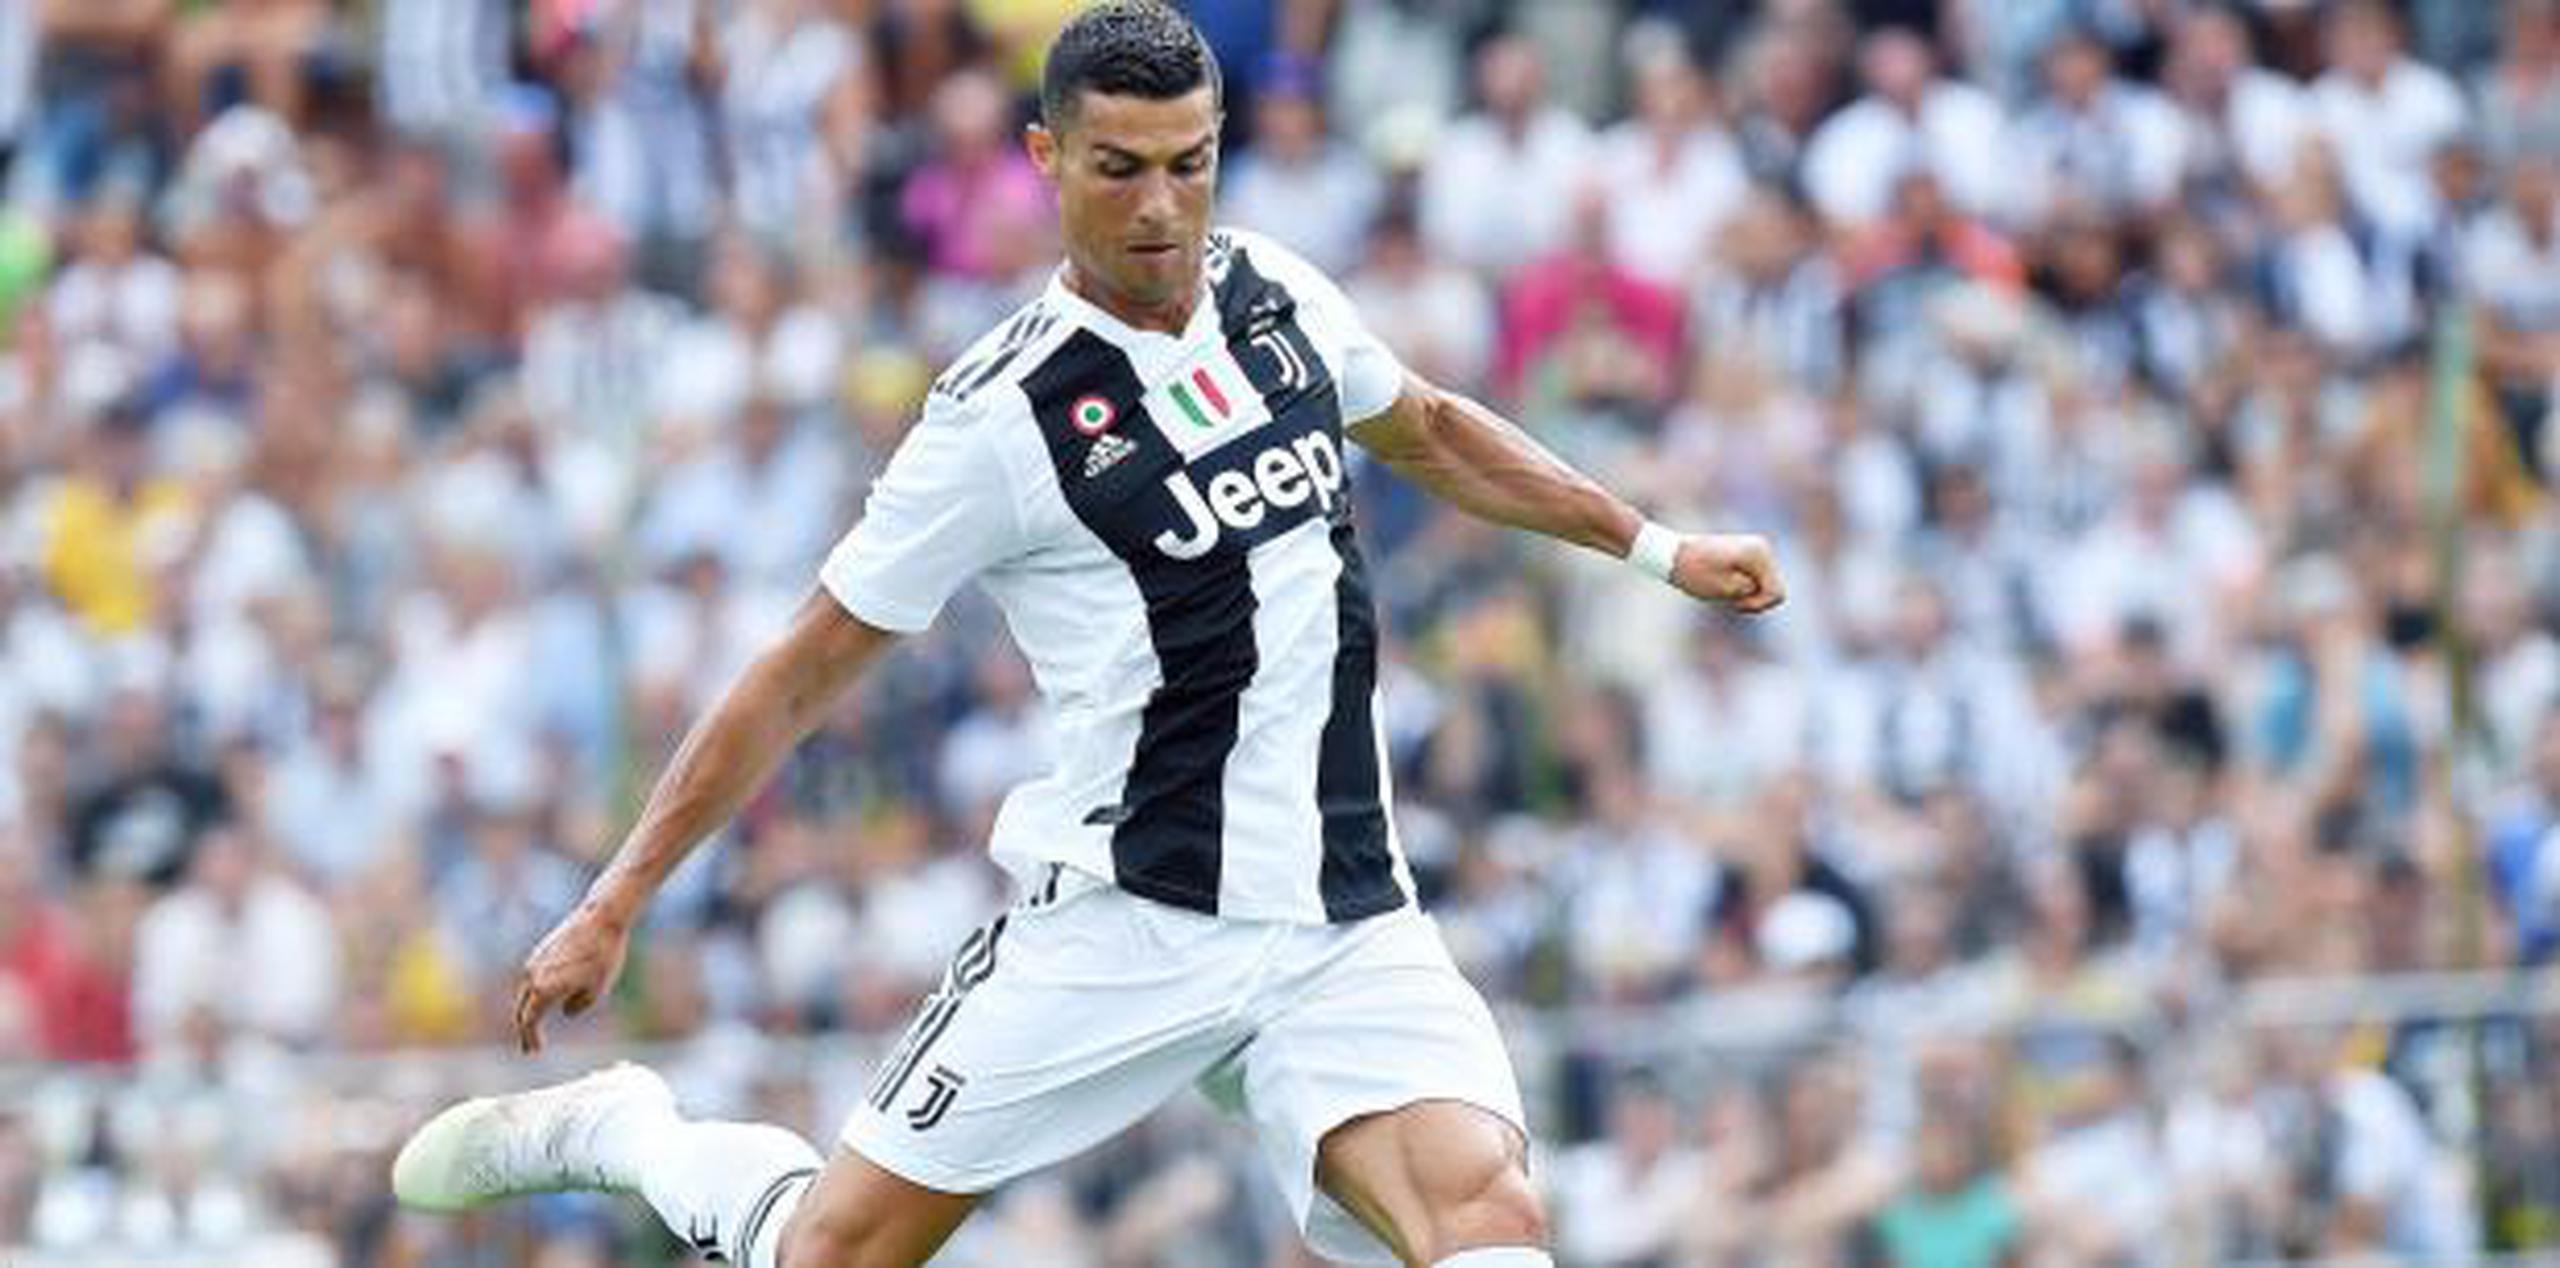 Ronaldo, por el que el Juventus pagó 112 millones de euros al Real Madrid, saltará al campo hoy en el estadio Bentegodi de Verona. (EFE)